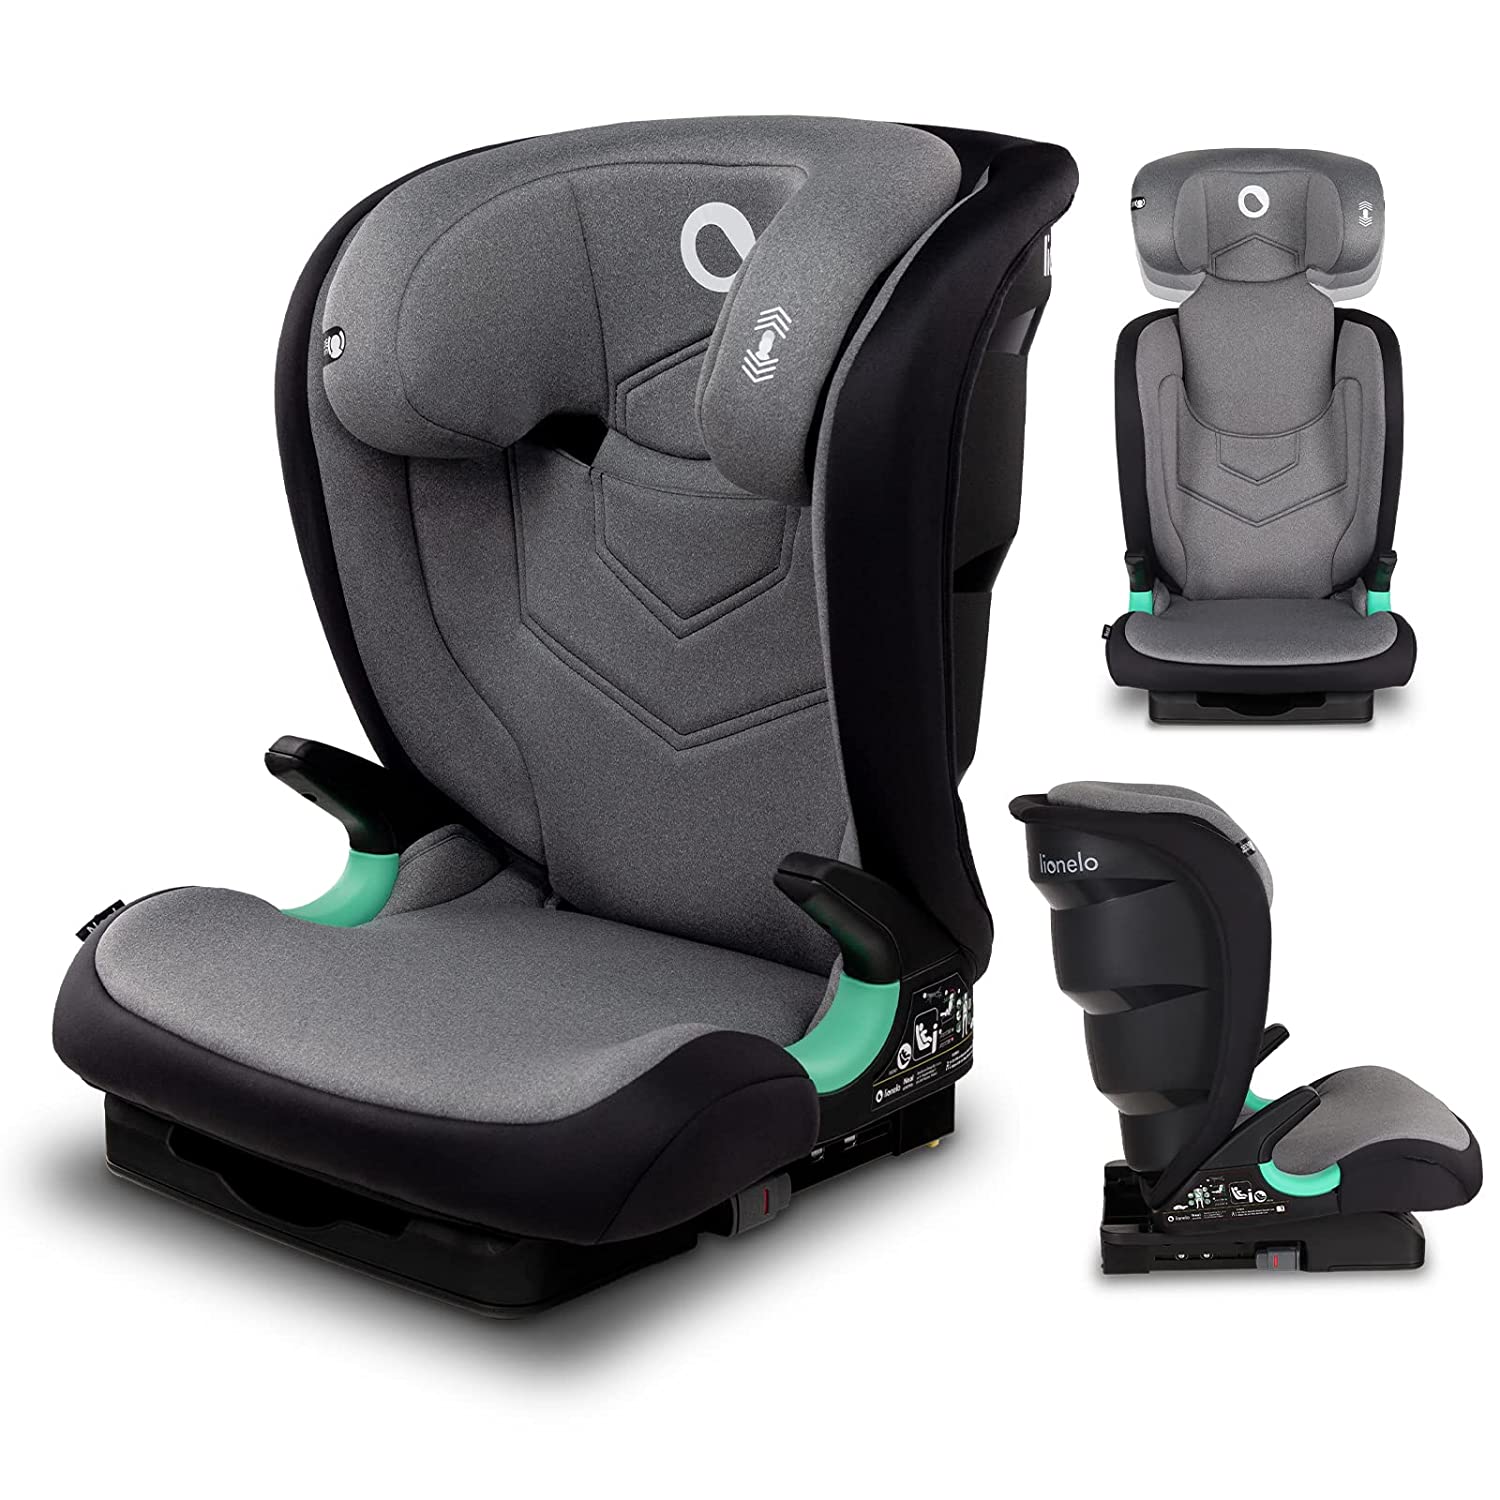 Lionelo Neal Child Seat 15-36 kg Isofix Side Protectors Marking i-Size 3-Way Adjustable Backrest Height-Adjustable Headrest Ventilation System (Grey)